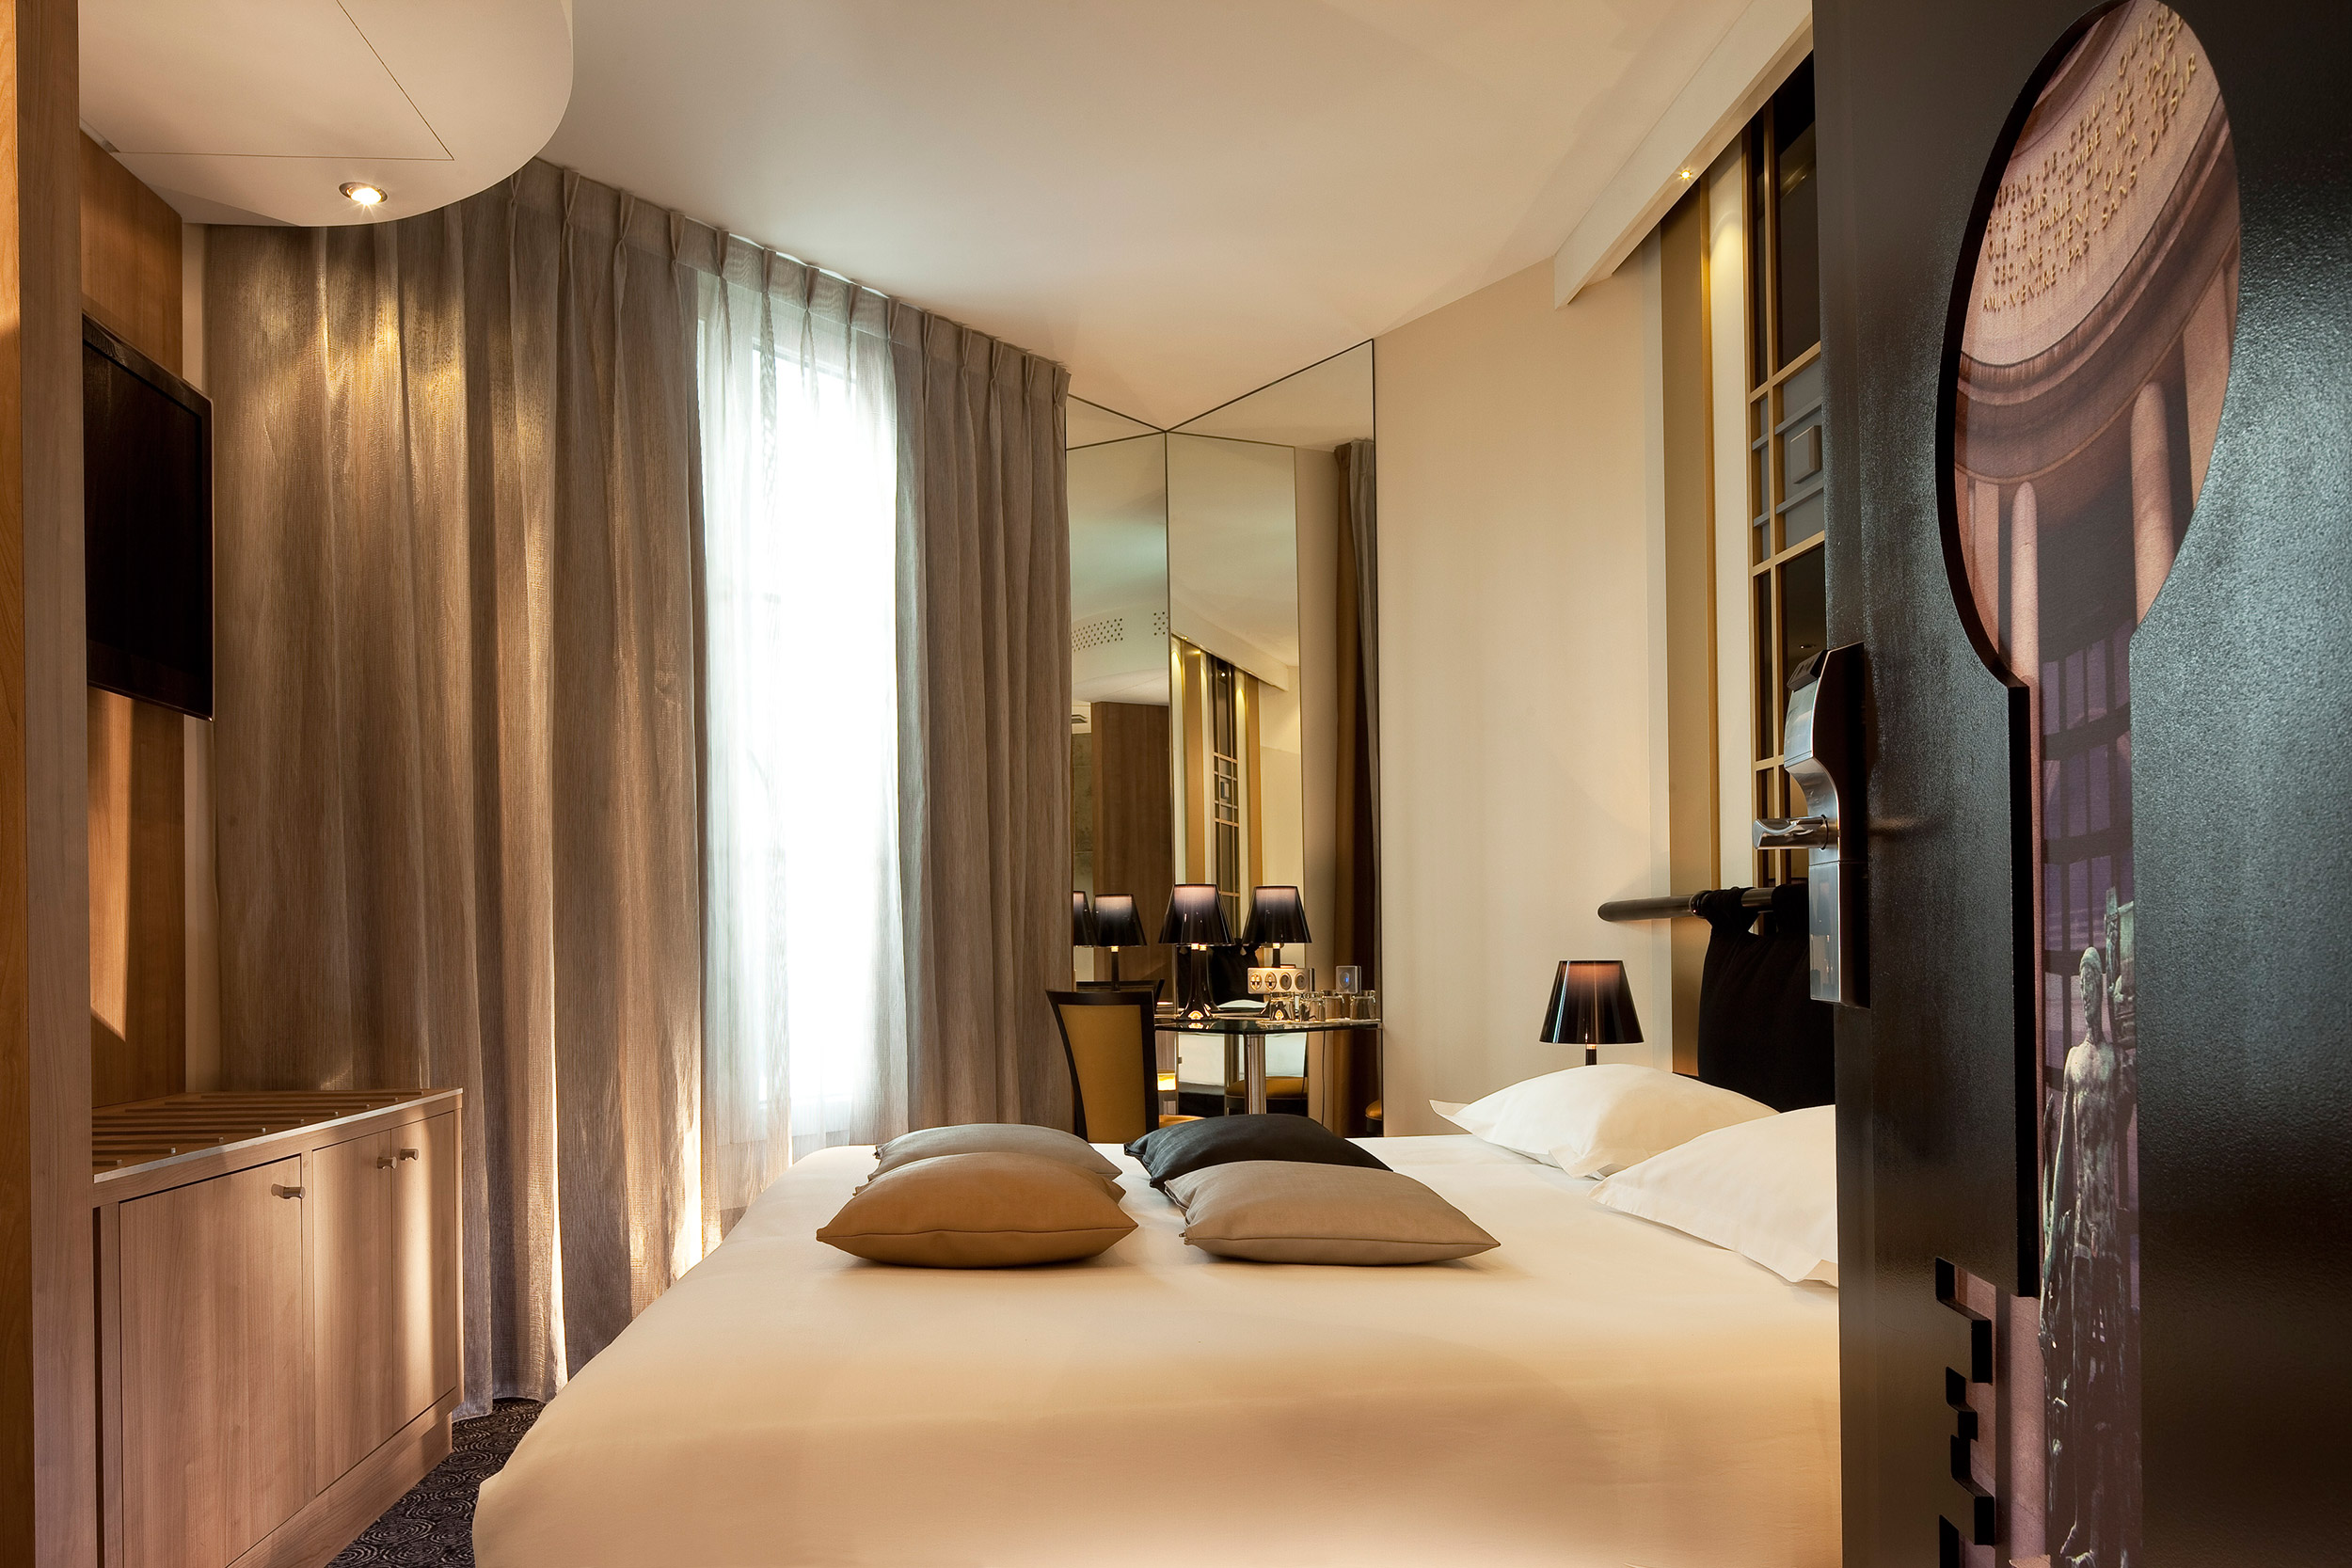 Chambres - Hotel Design Secret de Paris - Hotel Paris 9 - 75009